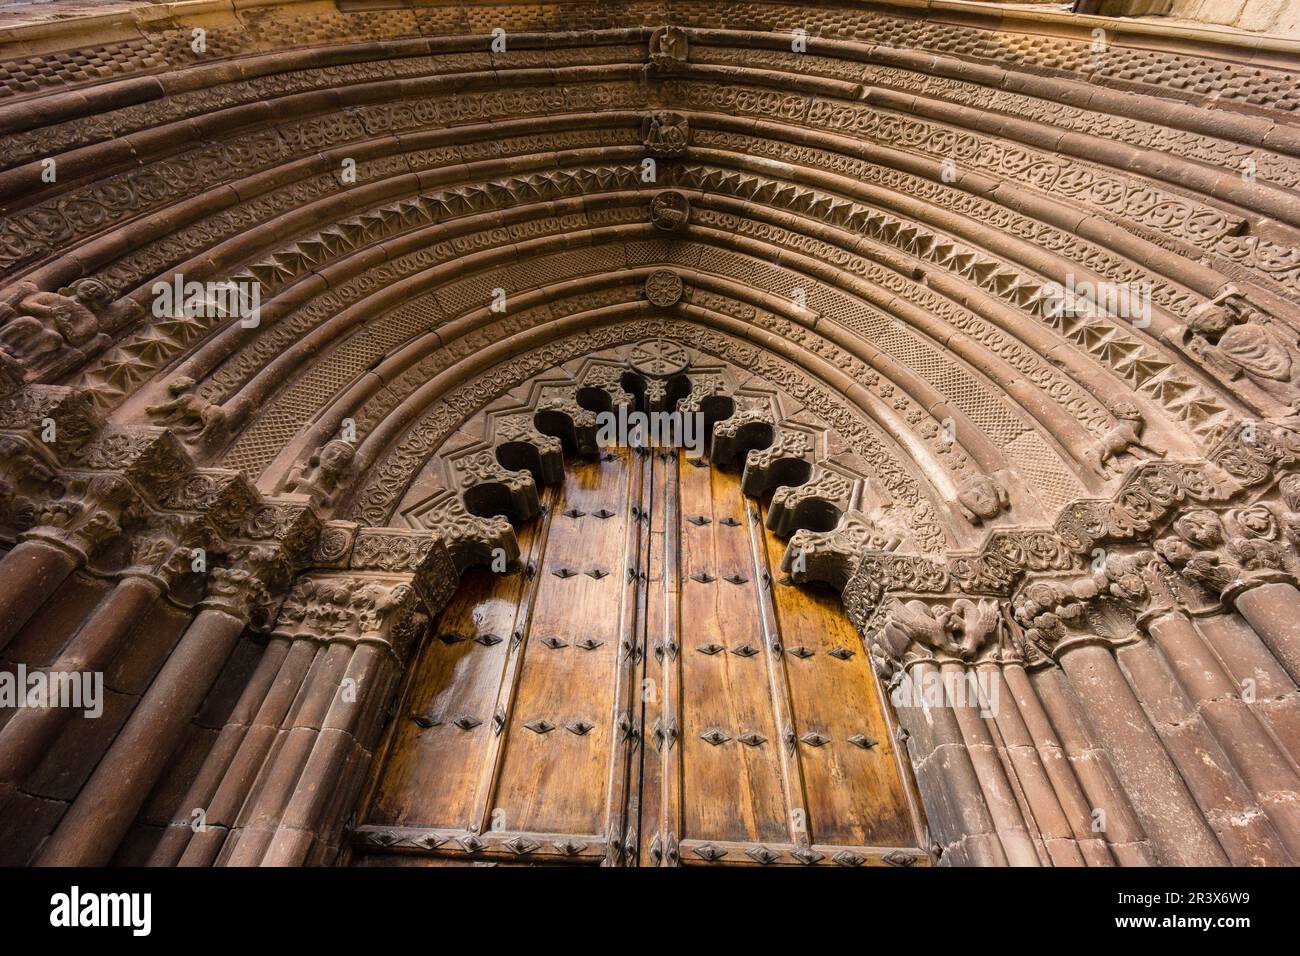 portada ojival y arquería polilobulada, iglesia de San Román, edificada hacia 1200, Cirauqui, comunidad foral de Navarra, Spain. Stock Photo